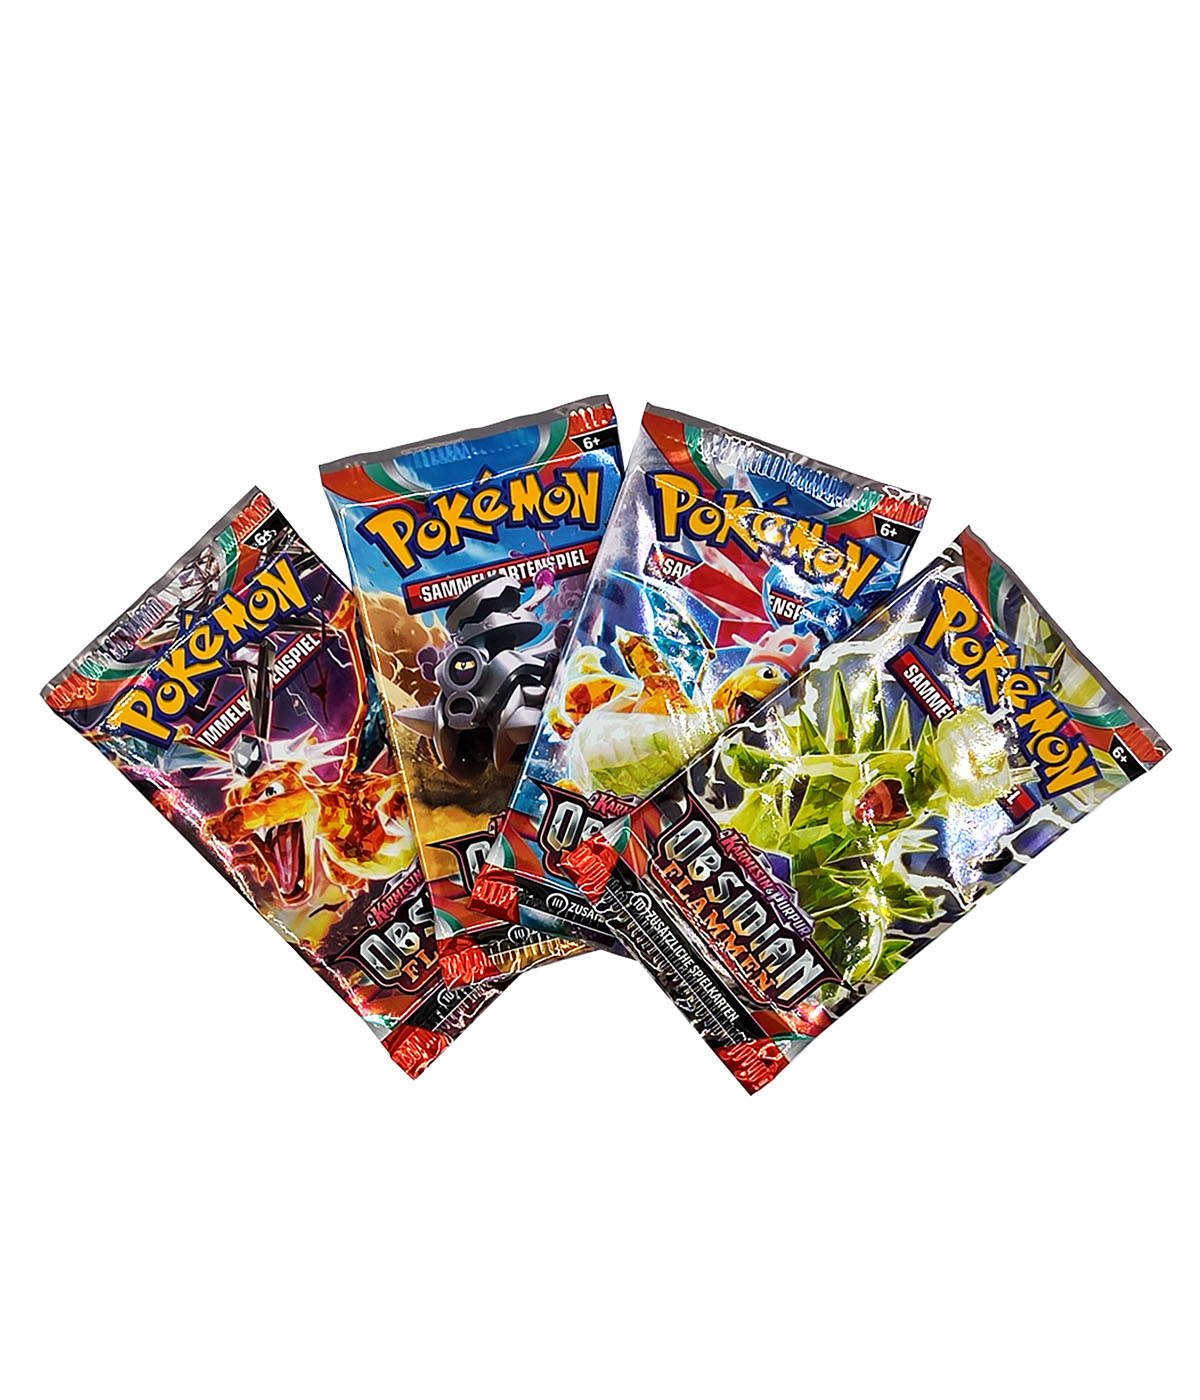 Pokémon "Obsidianflammen" - Display mit 18 Boosterpacks